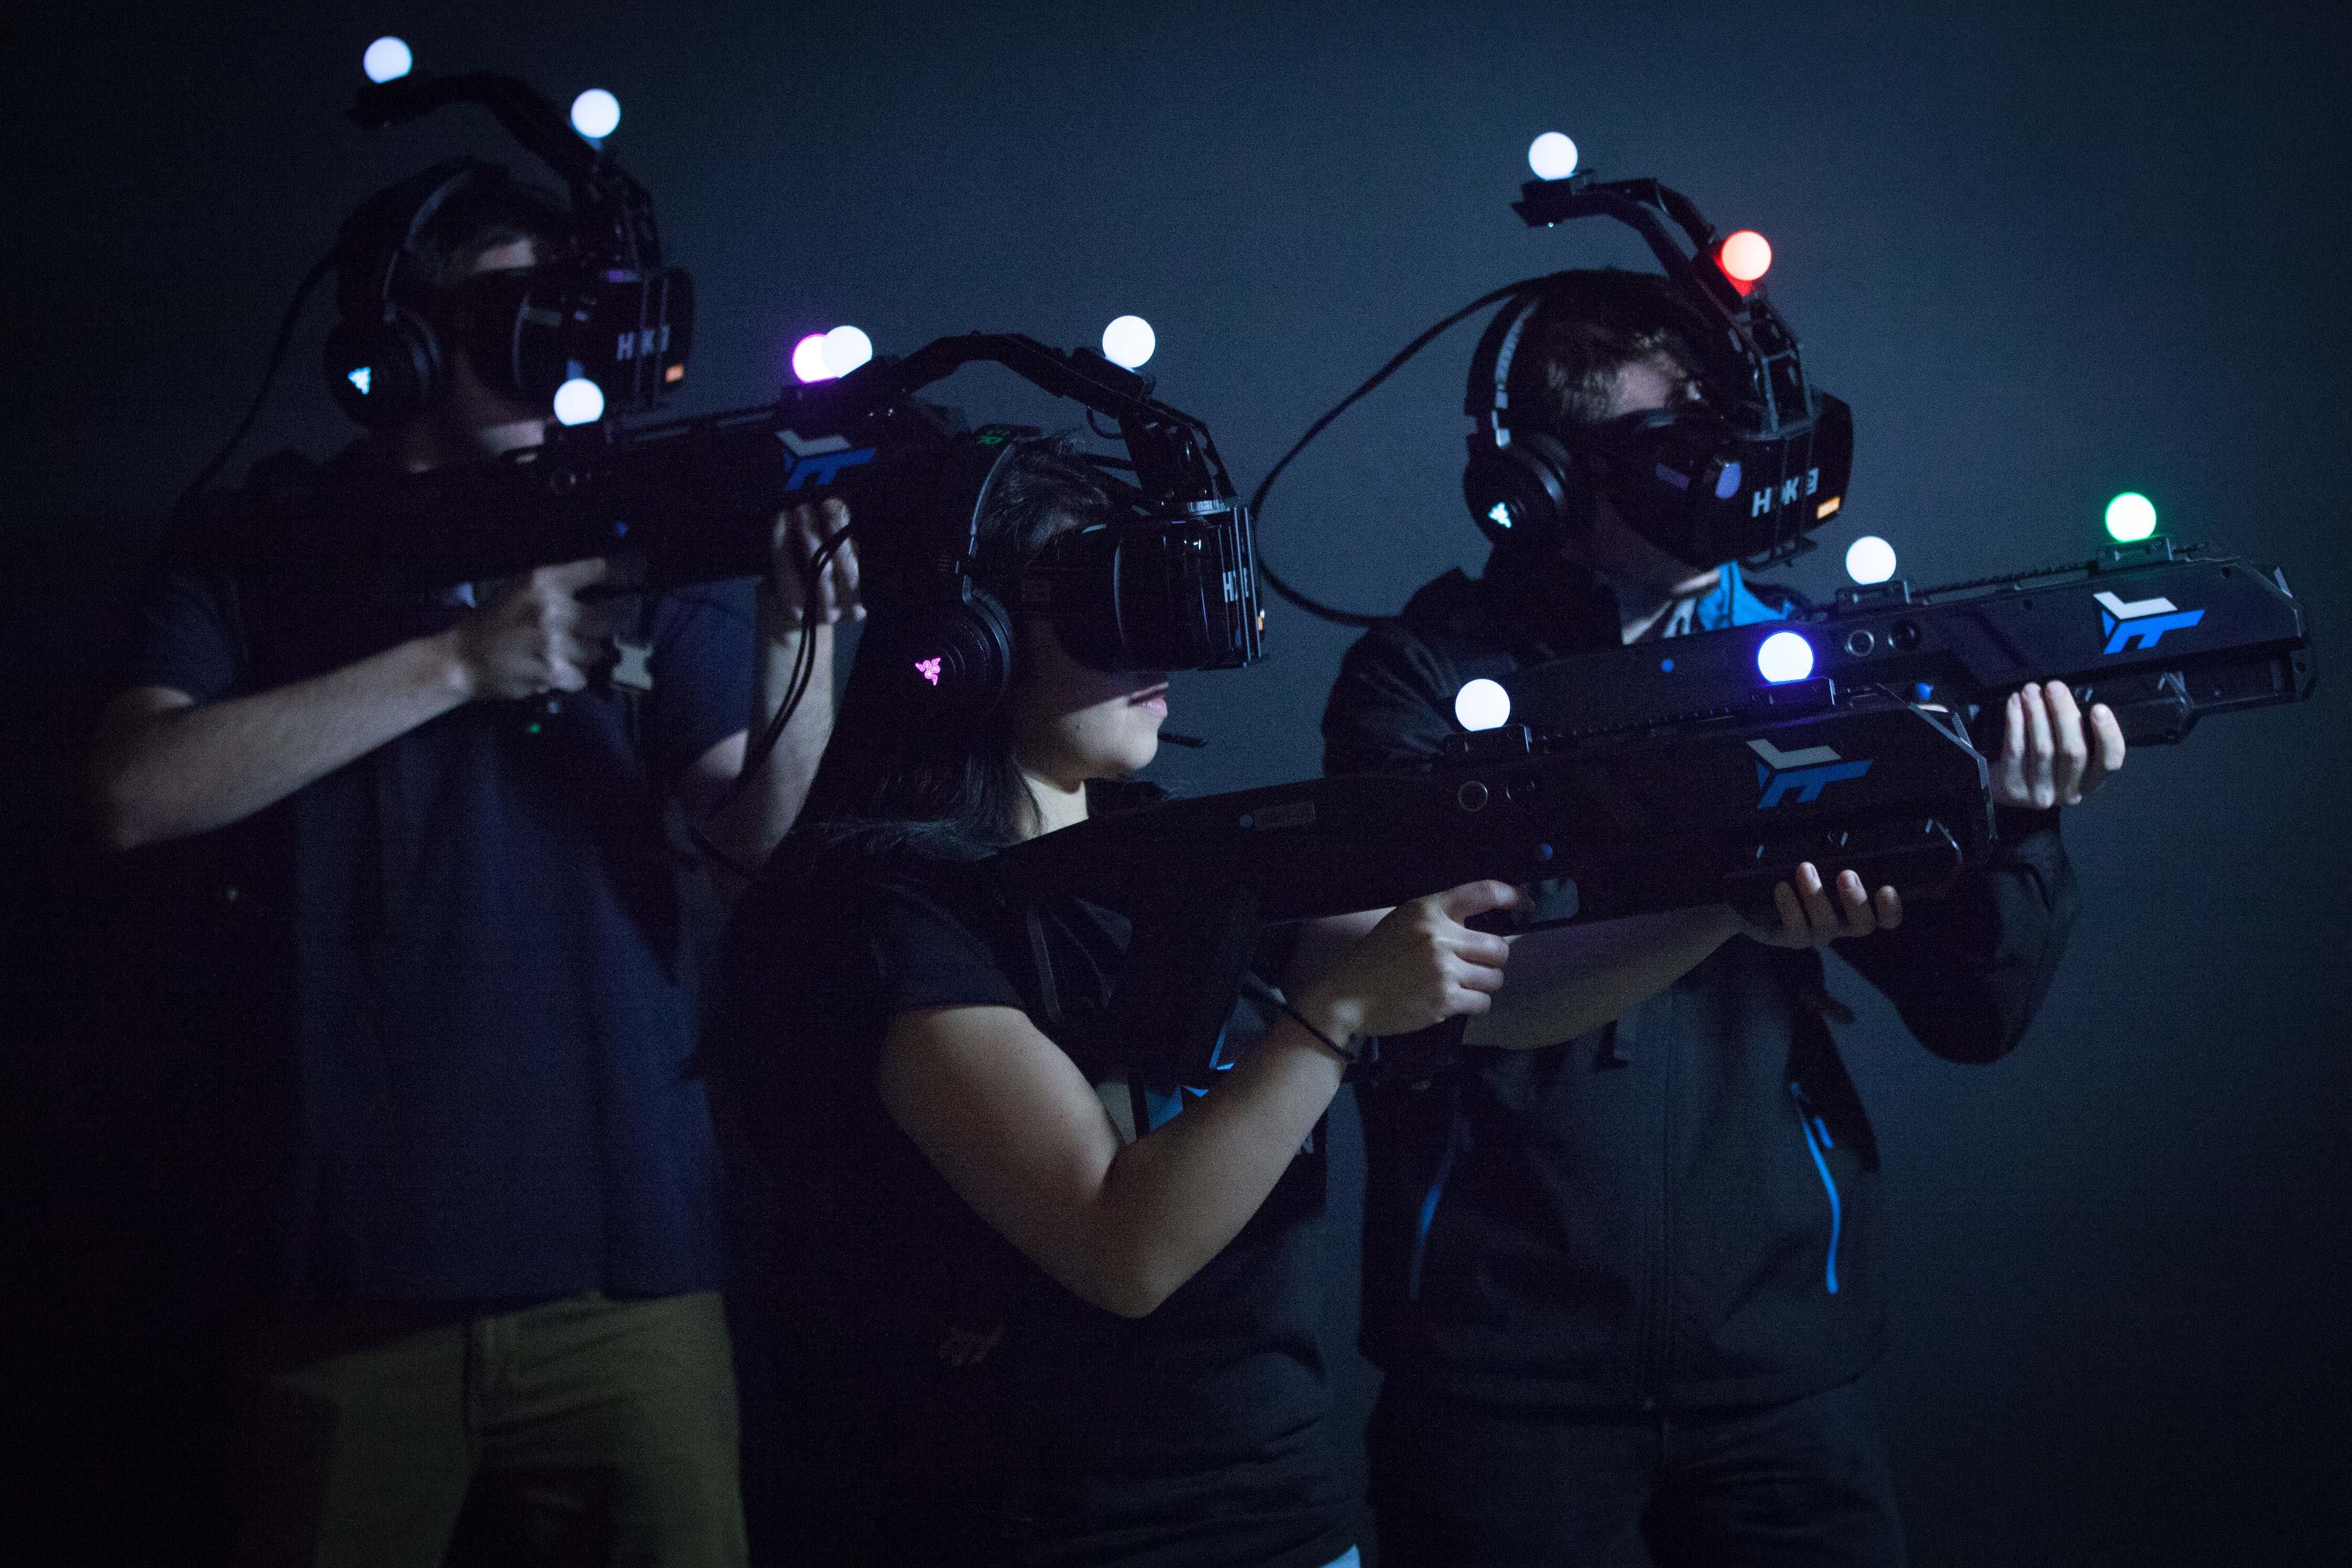 Клуб игровой реальности. Средства виртуальной реальности. Погружение в виртуальную реальность. Игровая виртуальная реальность. Виртуальная реальность (Virtual reality, VR).